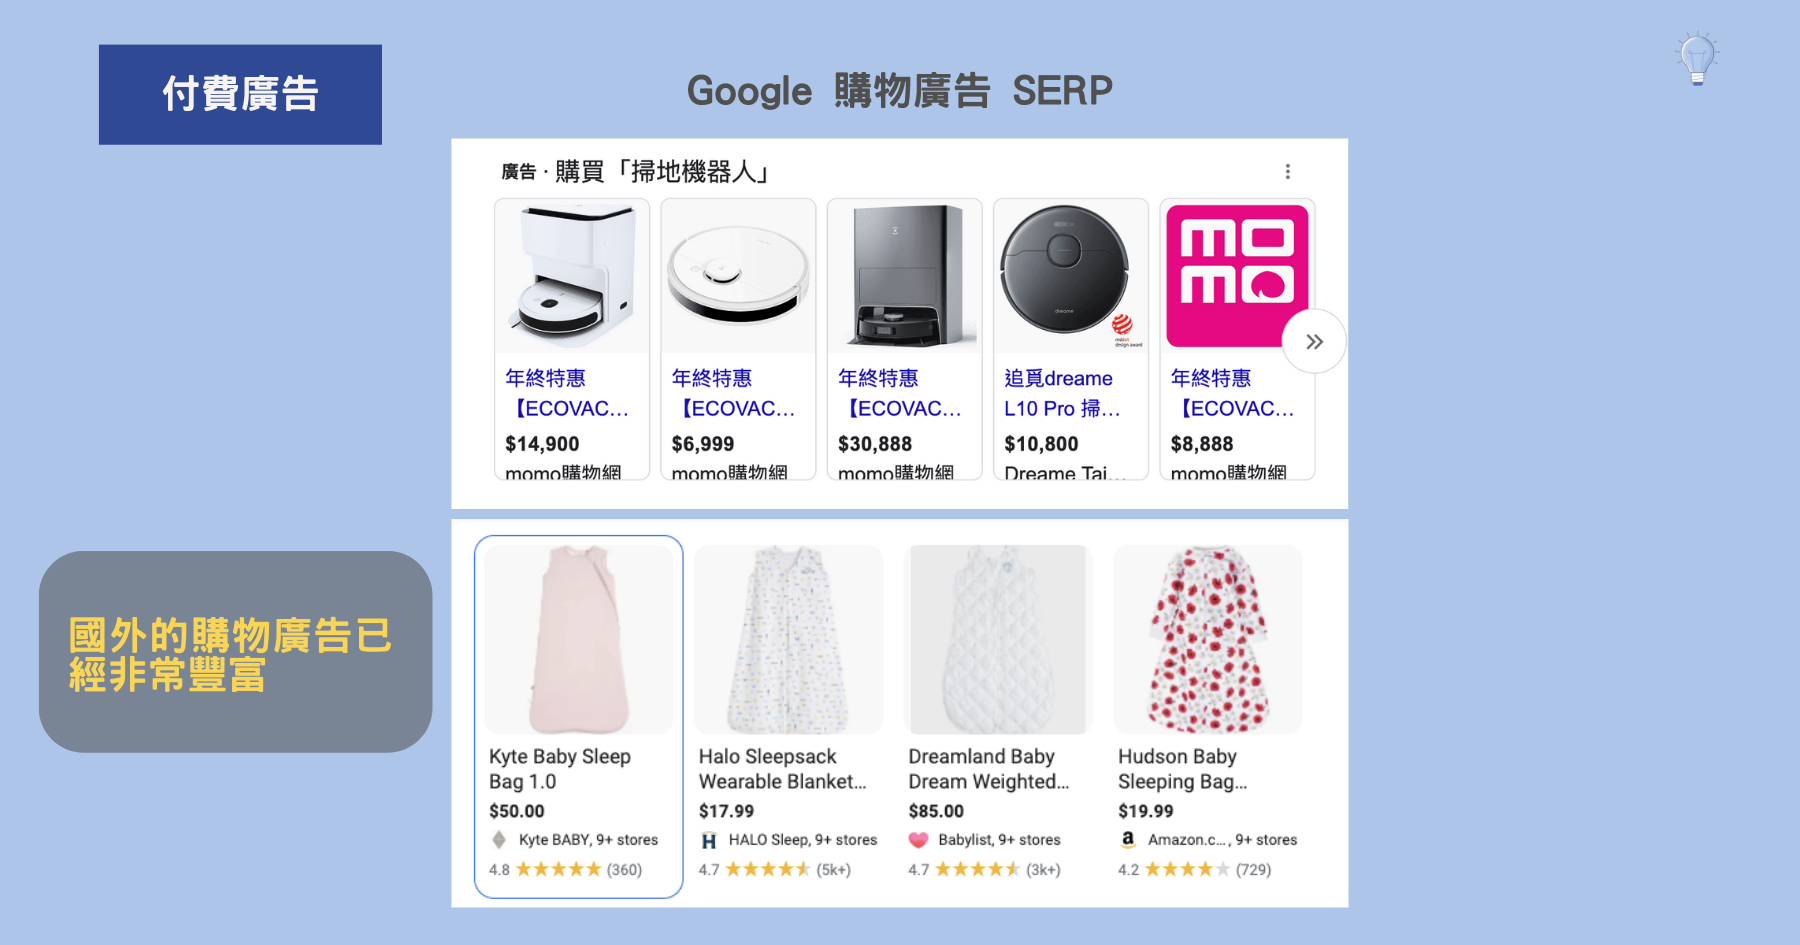 Google 購物廣告 SERP